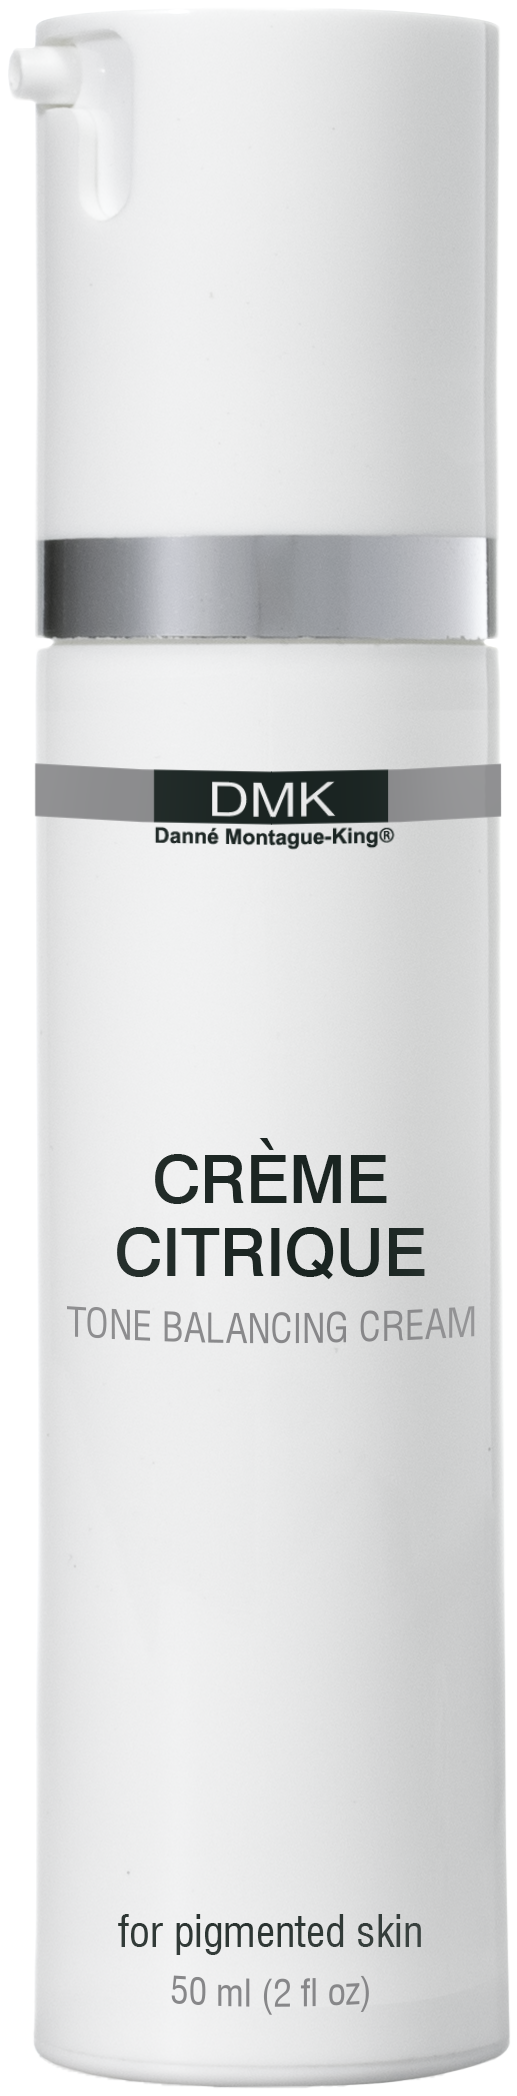 DMK Creme Citrique - Satori Fiori Skin Care